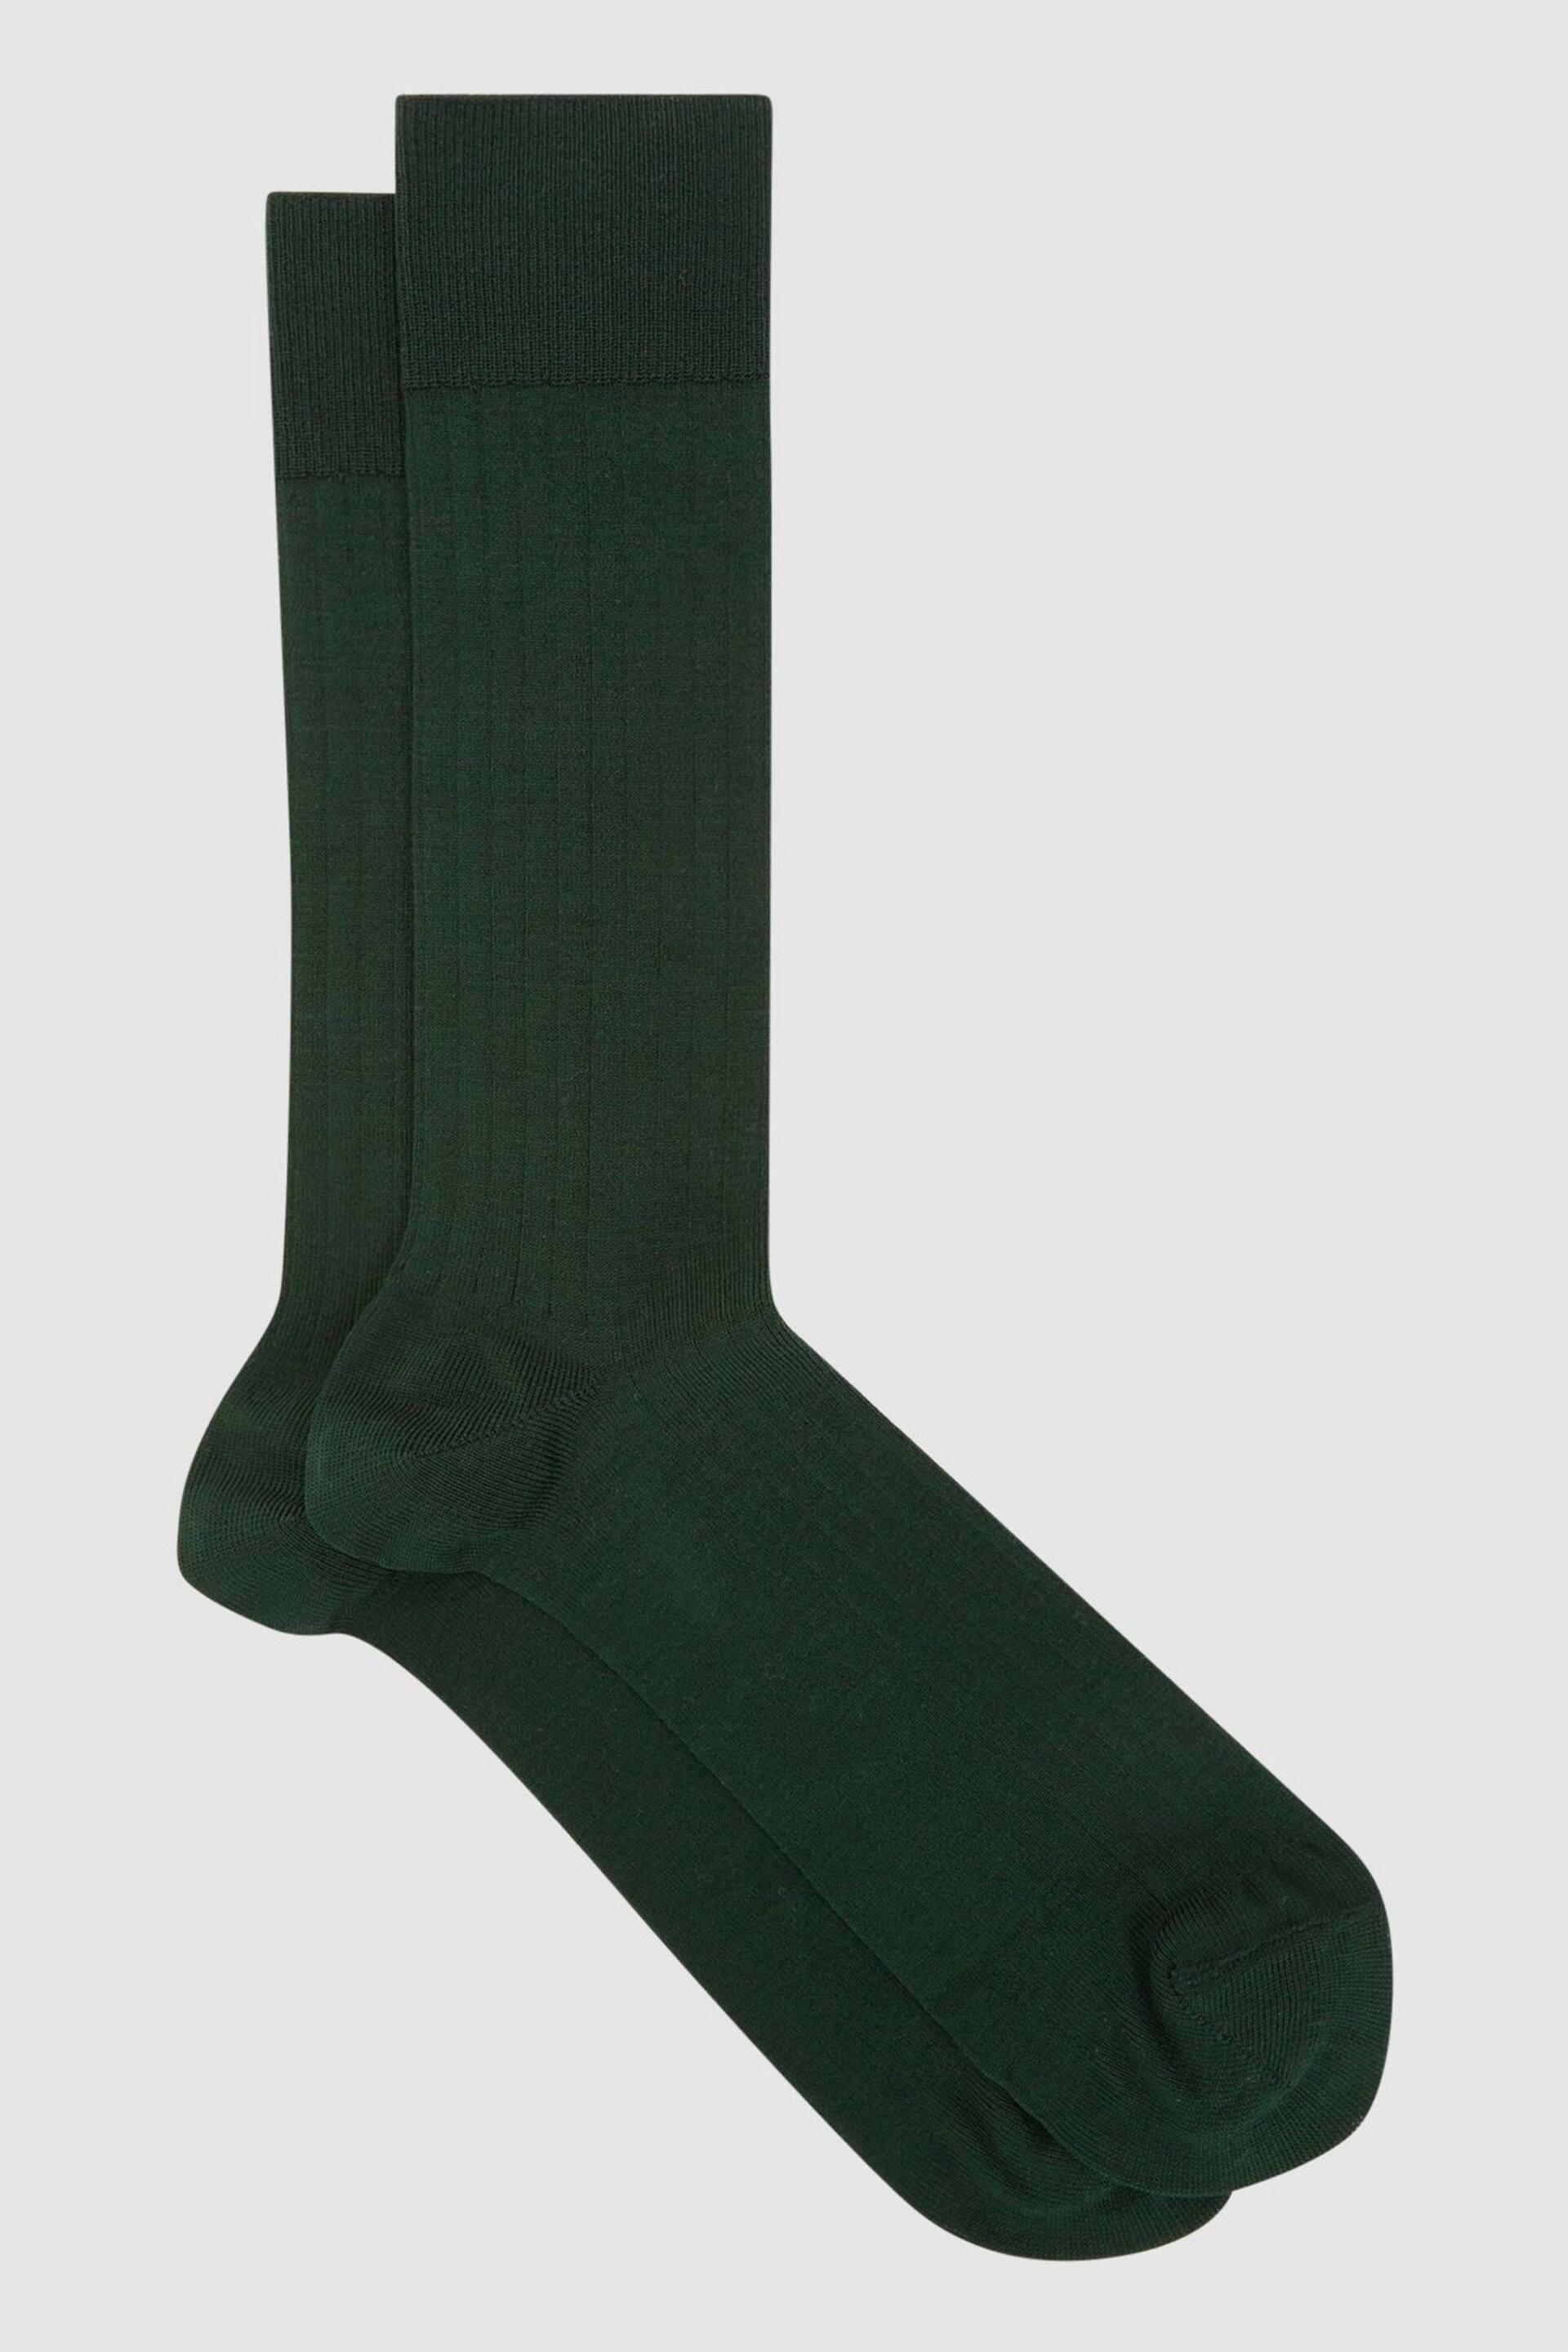 Reiss Bottle Green Fela Ribbed Socks - Image 1 of 3